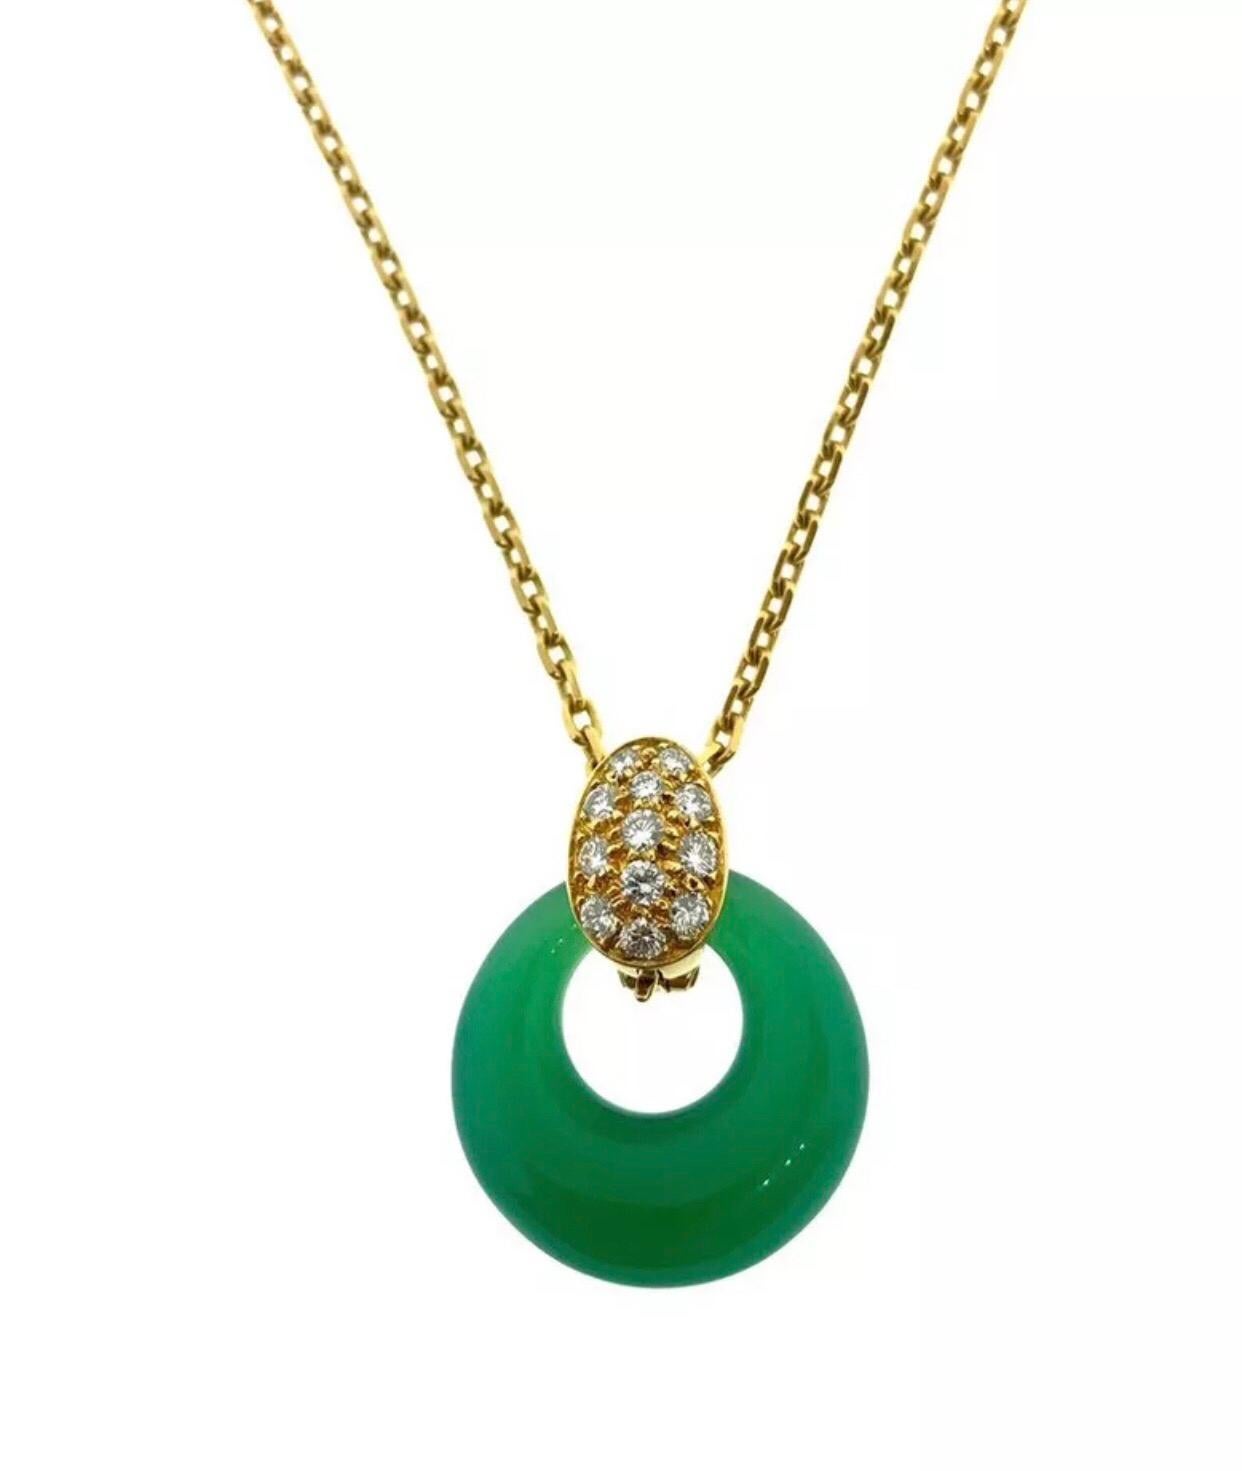 Van Cleef & Arpels Diamond Austauschbare Onyx-Perlen-Chrysopras-Halskette

Dies ist eine wunderschöne und wirklich lustige Halskette von Van Cleef & Arpels. Es wird mit drei austauschbaren Anhängern geliefert:: die jeweils aus Halbedelmaterialien